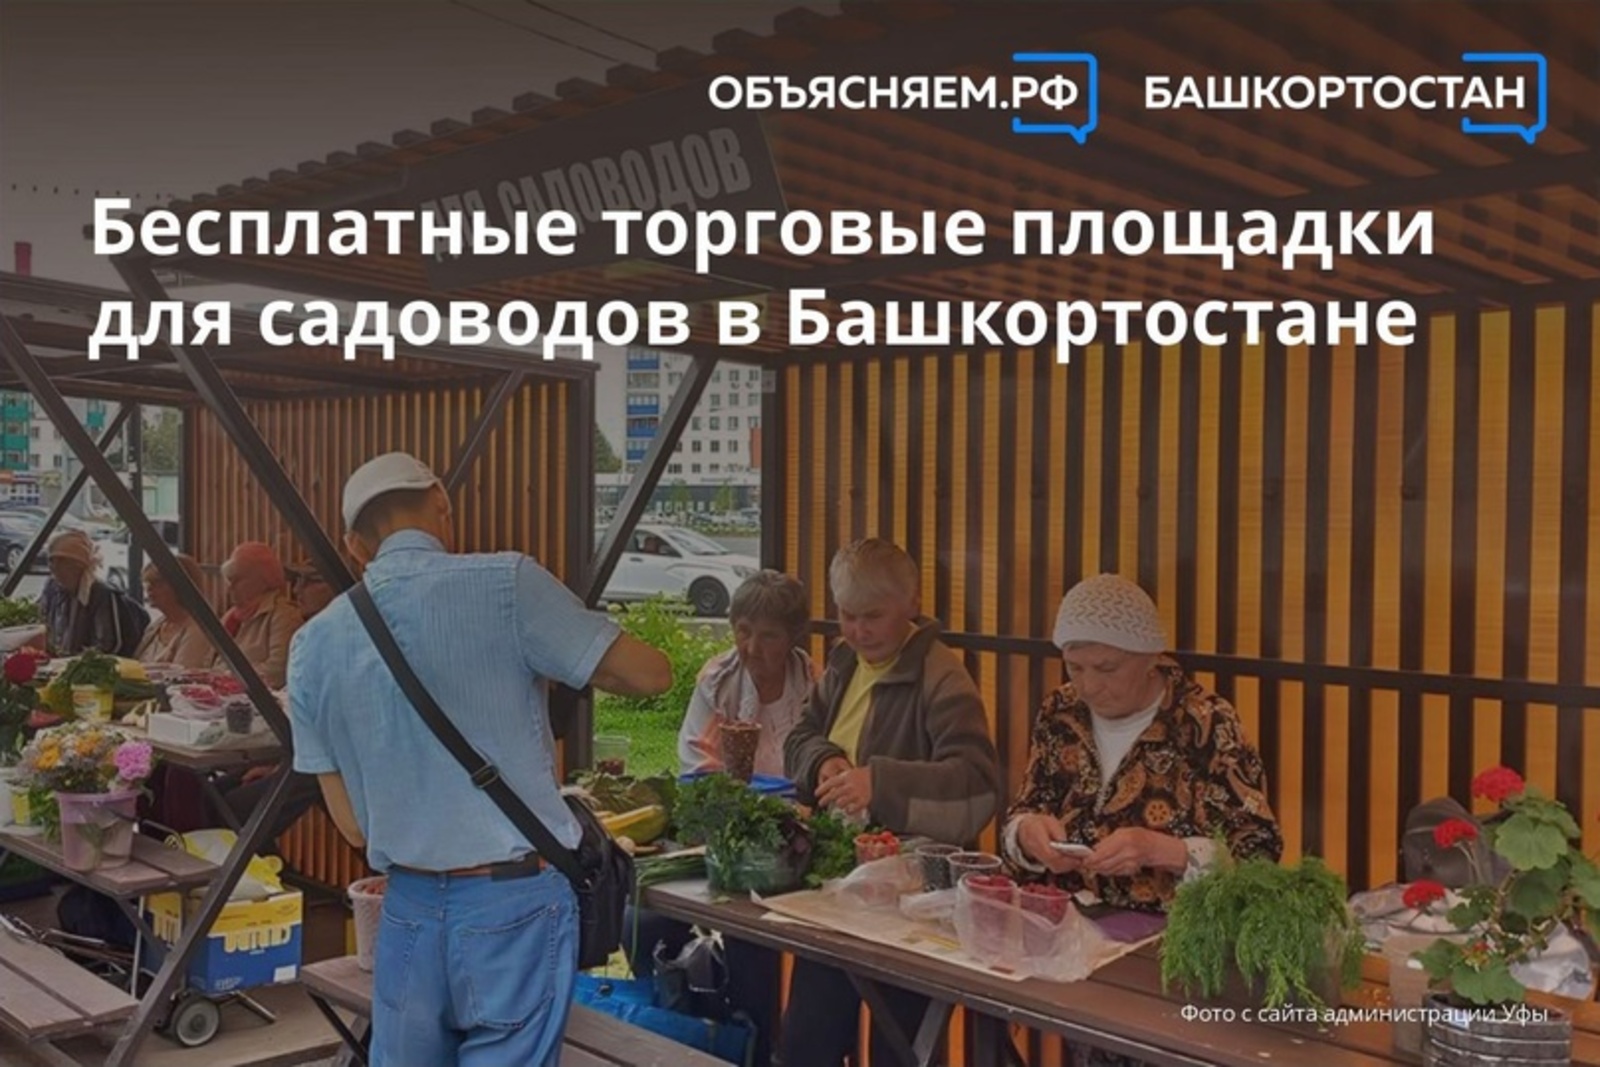 В Башкирии организовано свыше 3600 бесплатных торговых площадок для садоводов